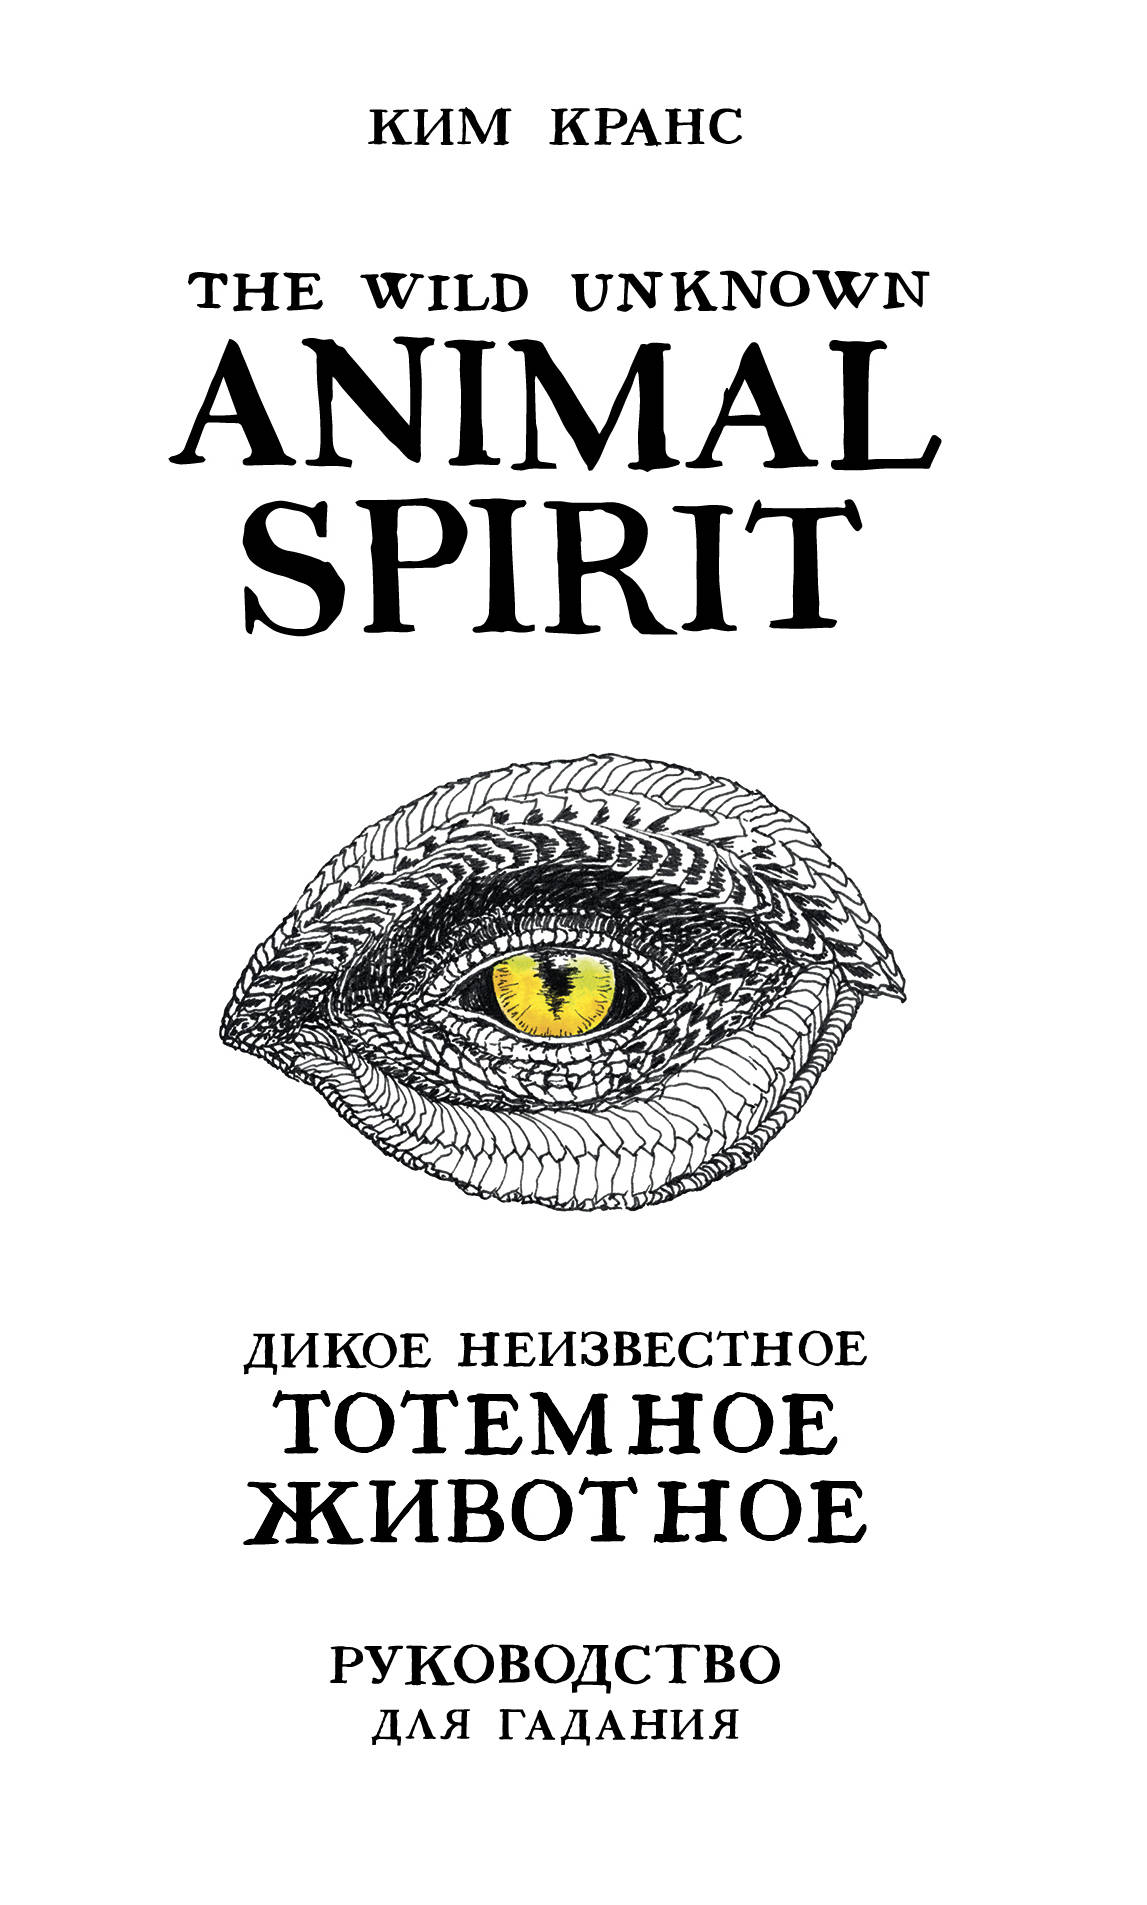 The Wild Unknown Animal Spirit. Дикое Неизвестное тотемное животное. Колода-оракул (63 карты и руководство в подарочном футляре) Кранс К.